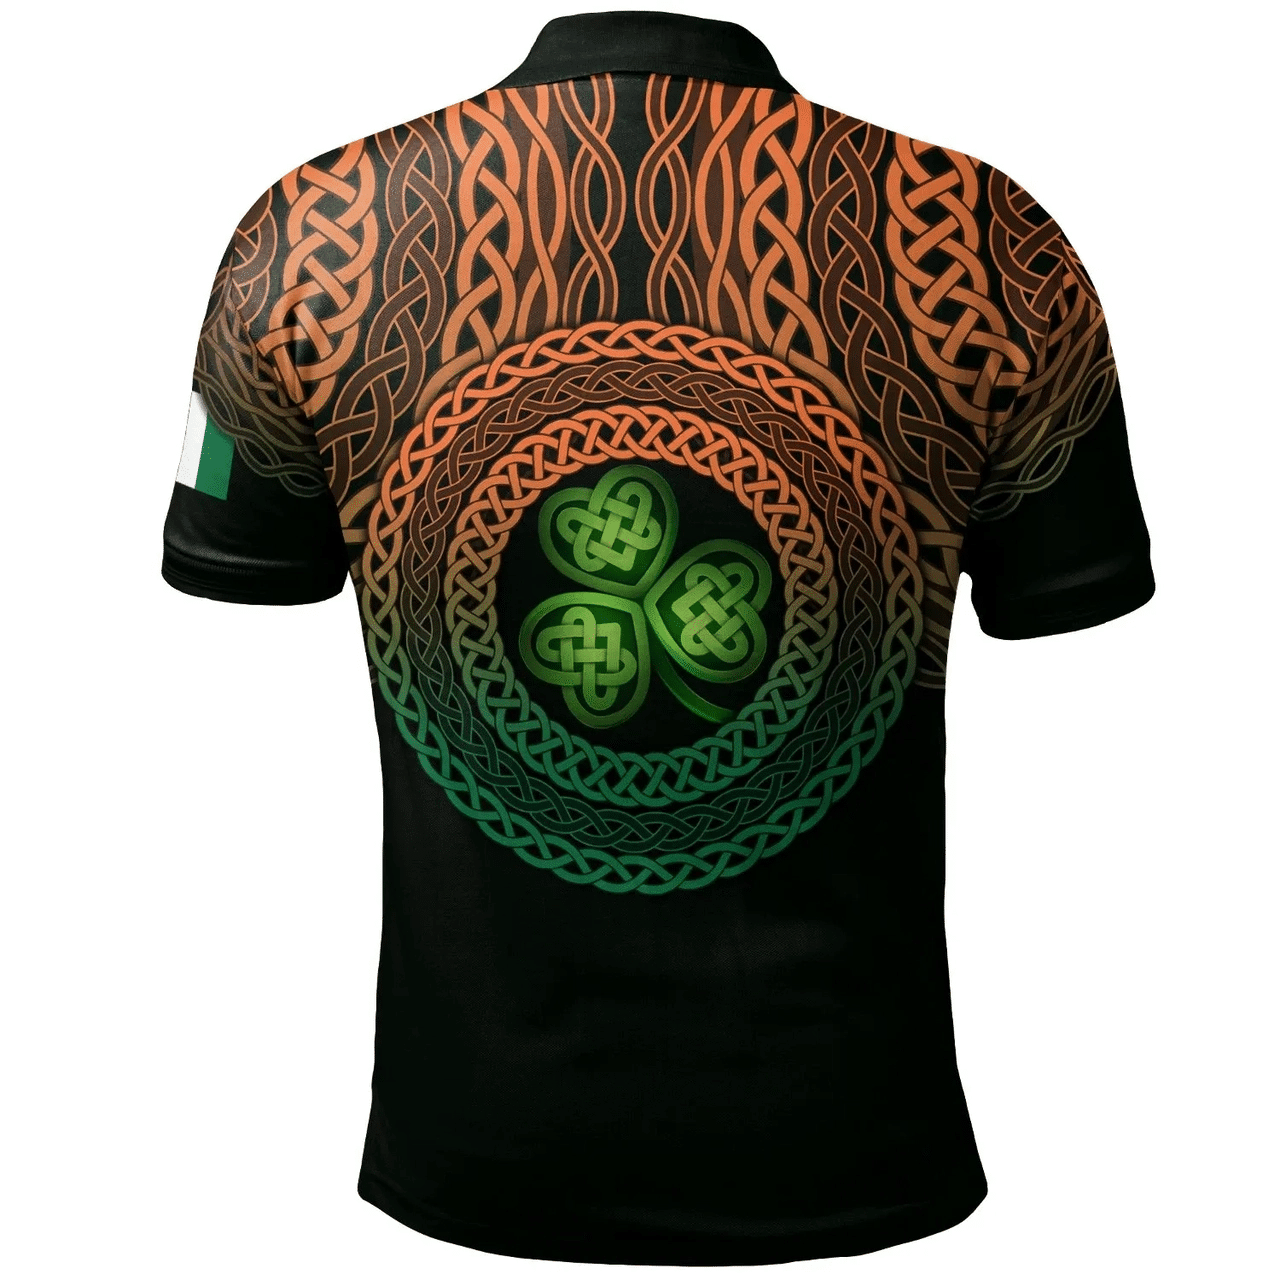 1stIreland Ireland Polo Shirt - Shane or McShane Irish Family Crest Polo Shirt - Celtic Pride A7 | 1stIreland.com